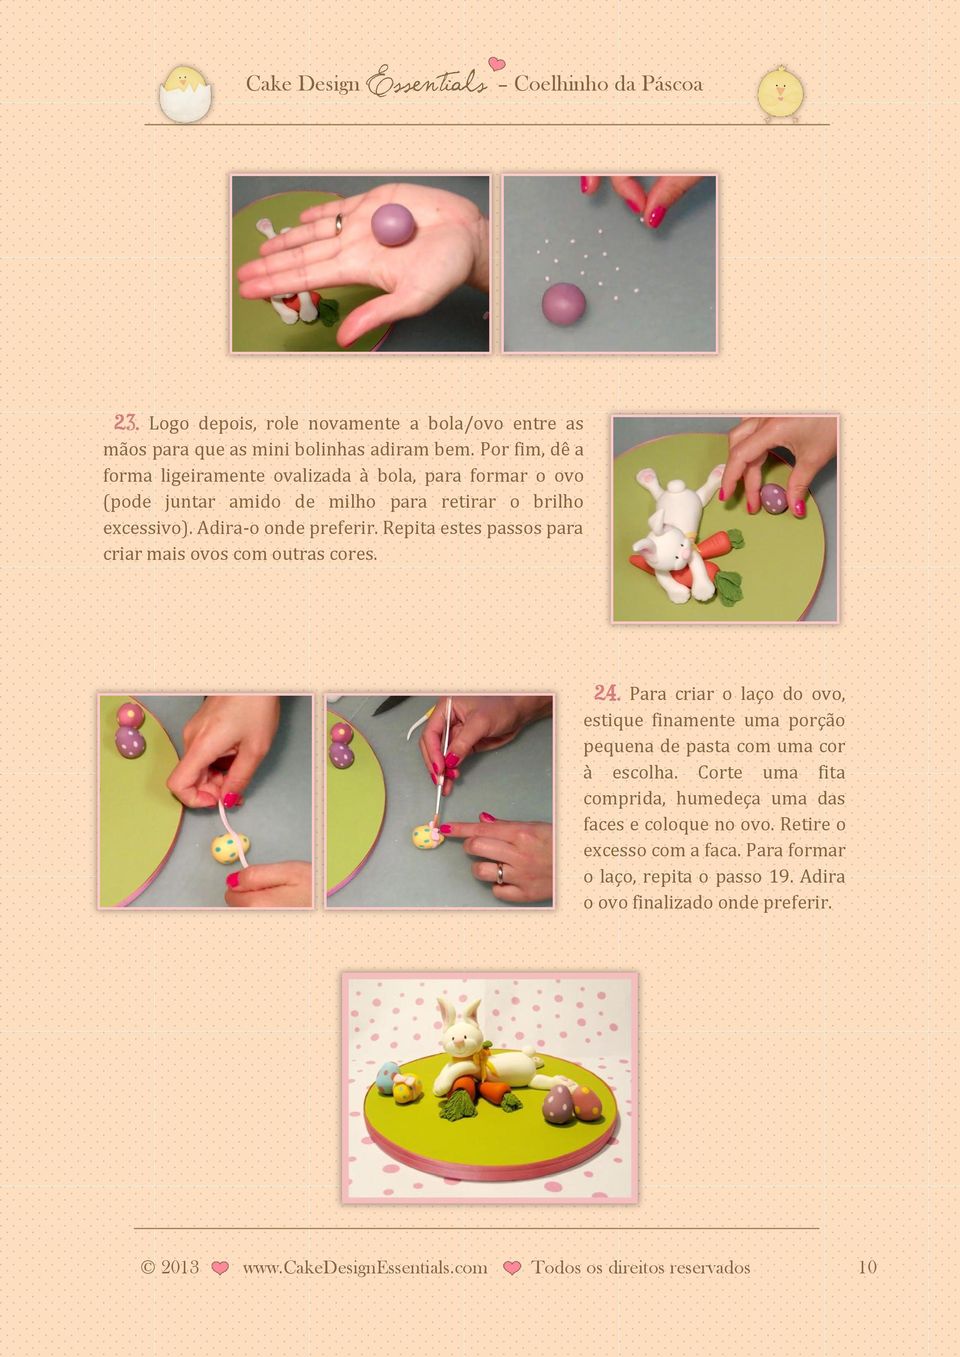 Repita estes passos para criar mais ovos com outras cores. 24. Para criar o laço do ovo, estique finamente uma porção pequena de pasta com uma cor à escolha.